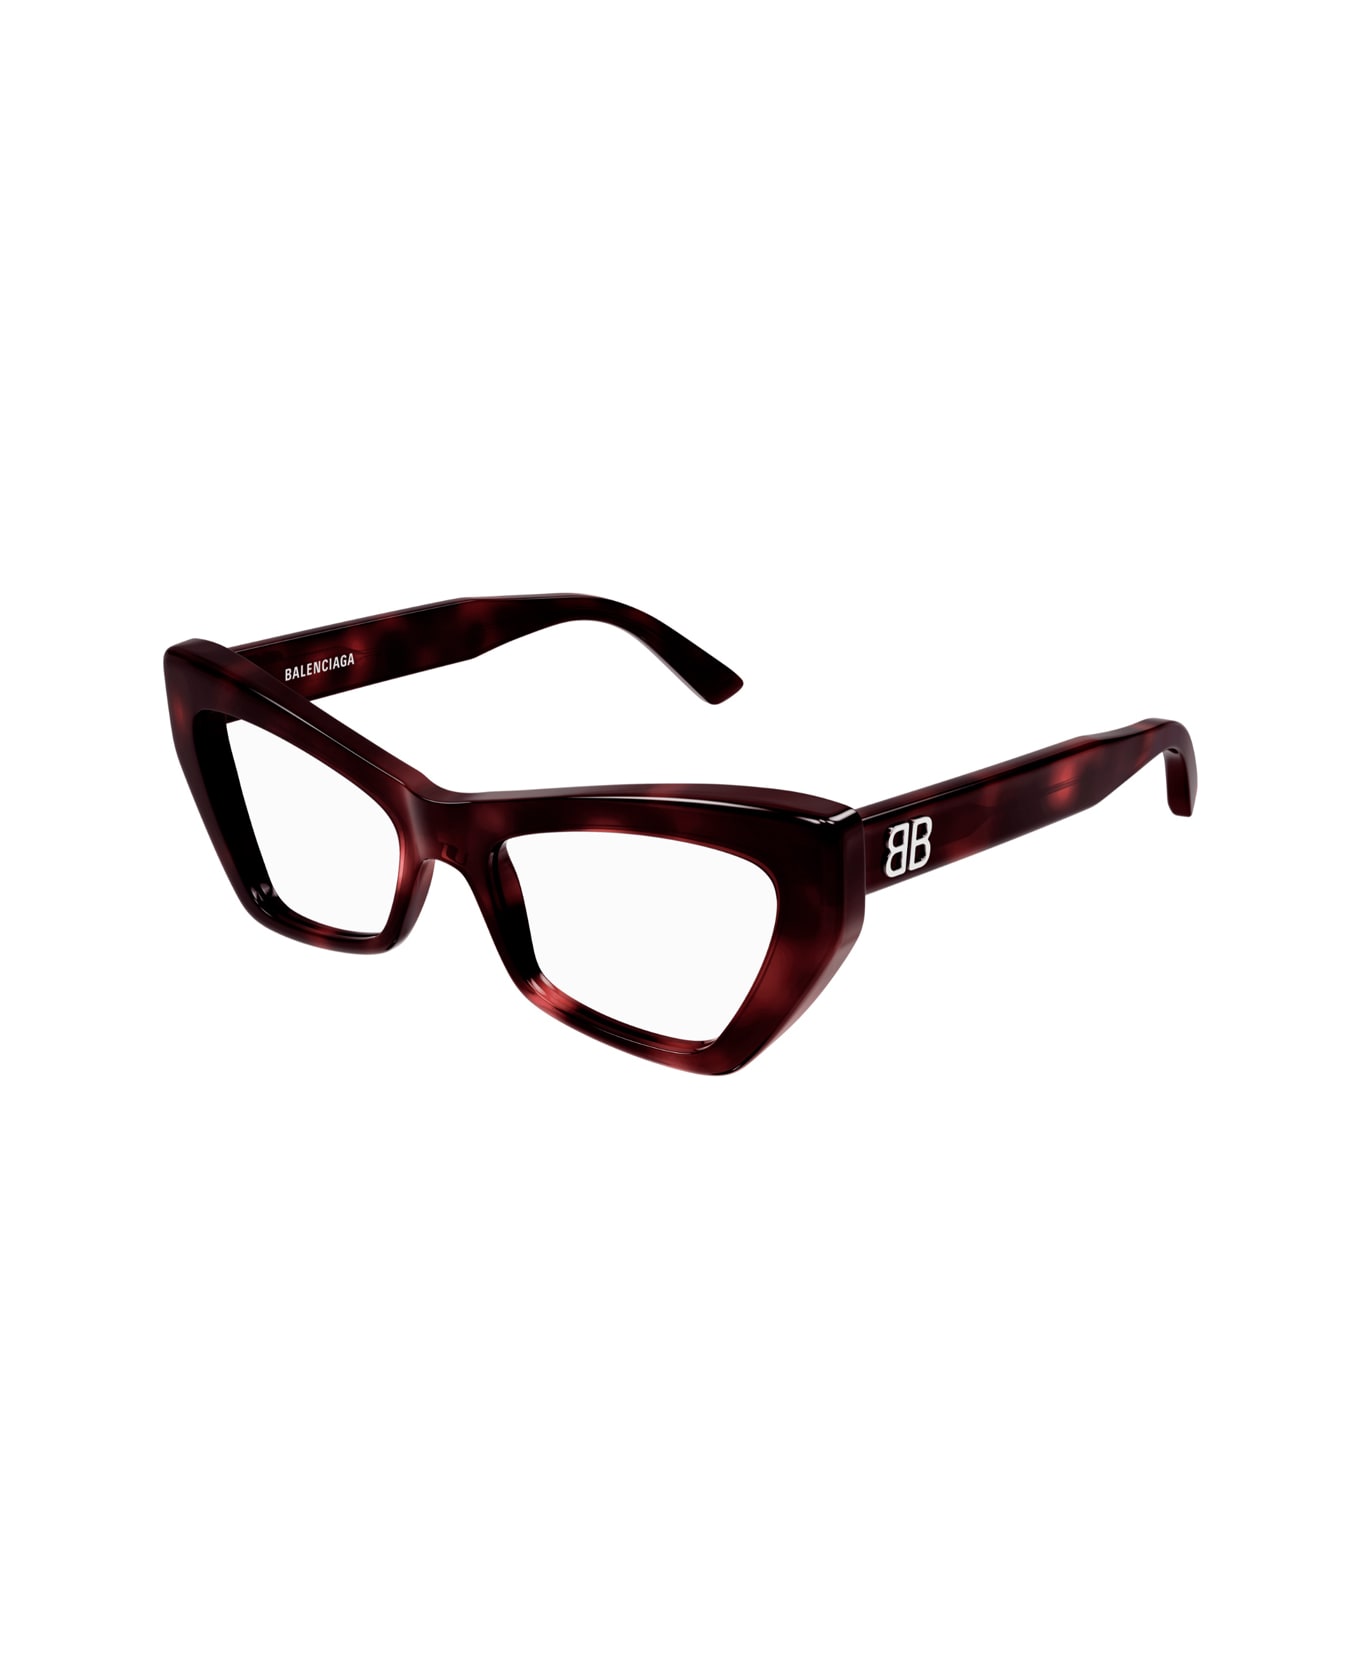 Balenciaga Eyewear Bb0296o 002 Glasses - Marrone